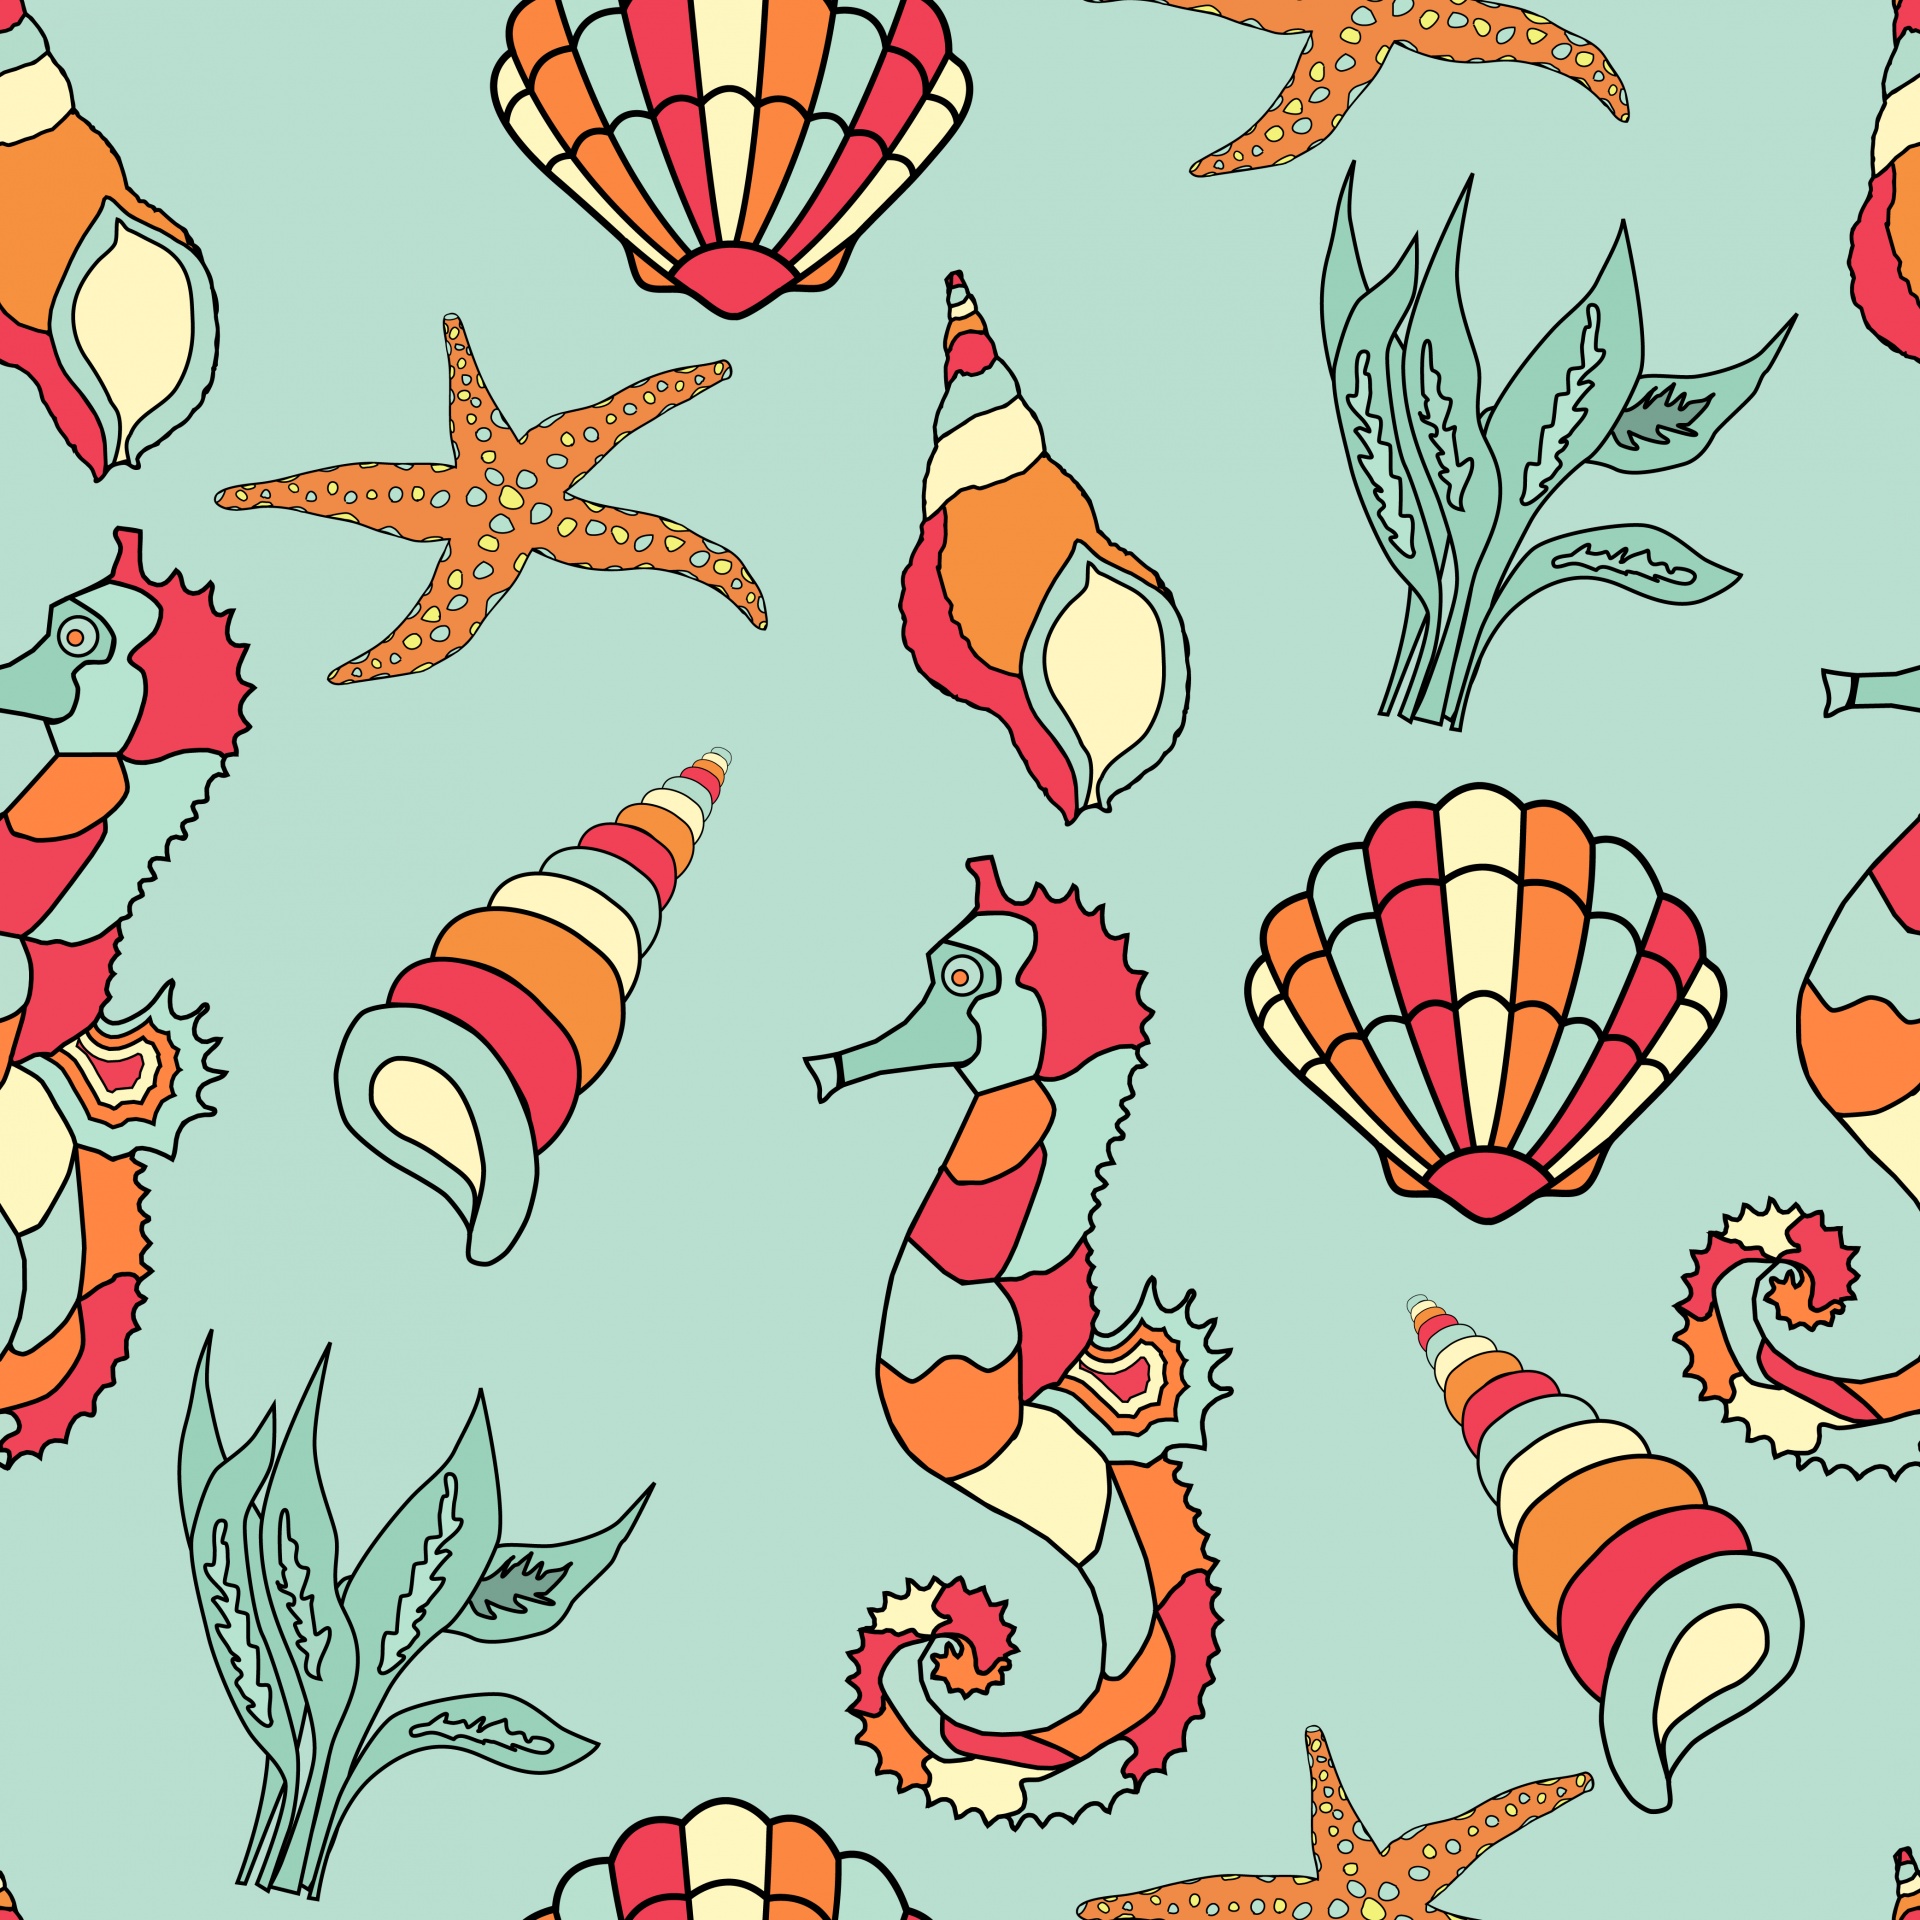 Seahorse, Seashell Wallpaper